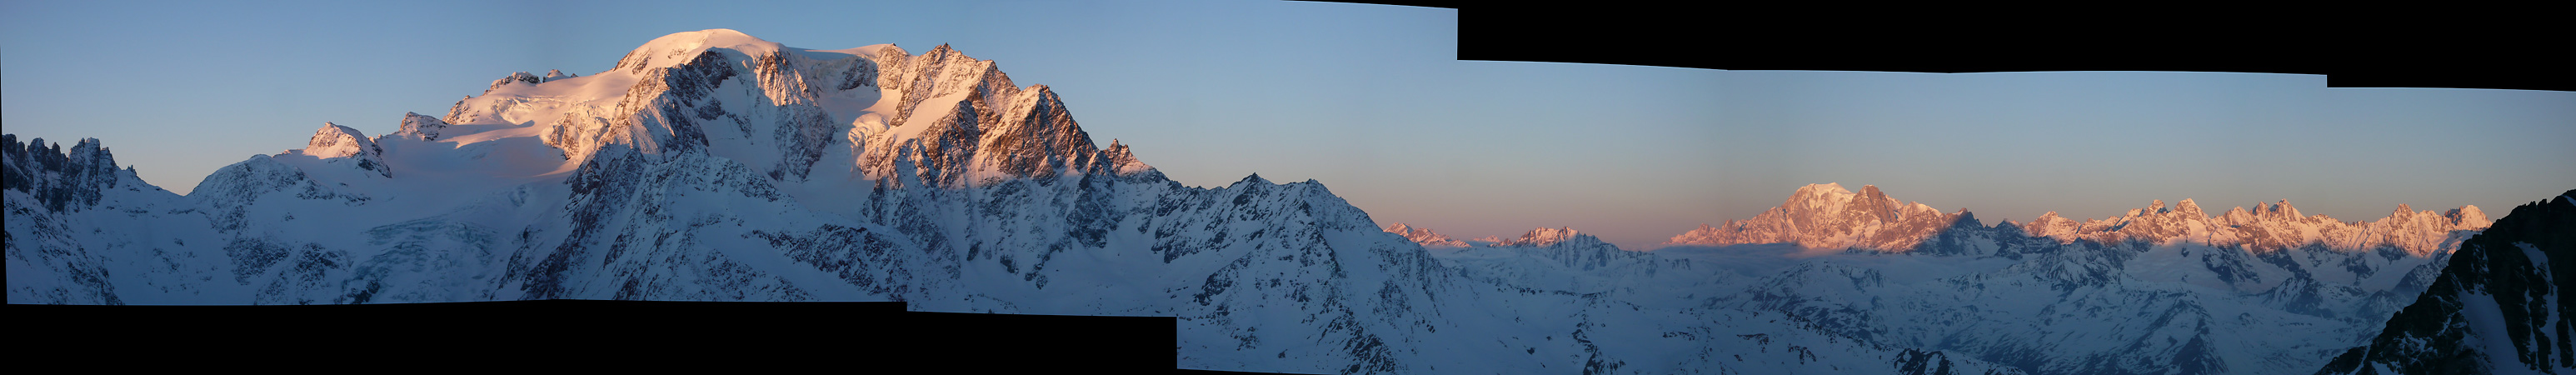 Panorama Mont Velan - Mont Blanc